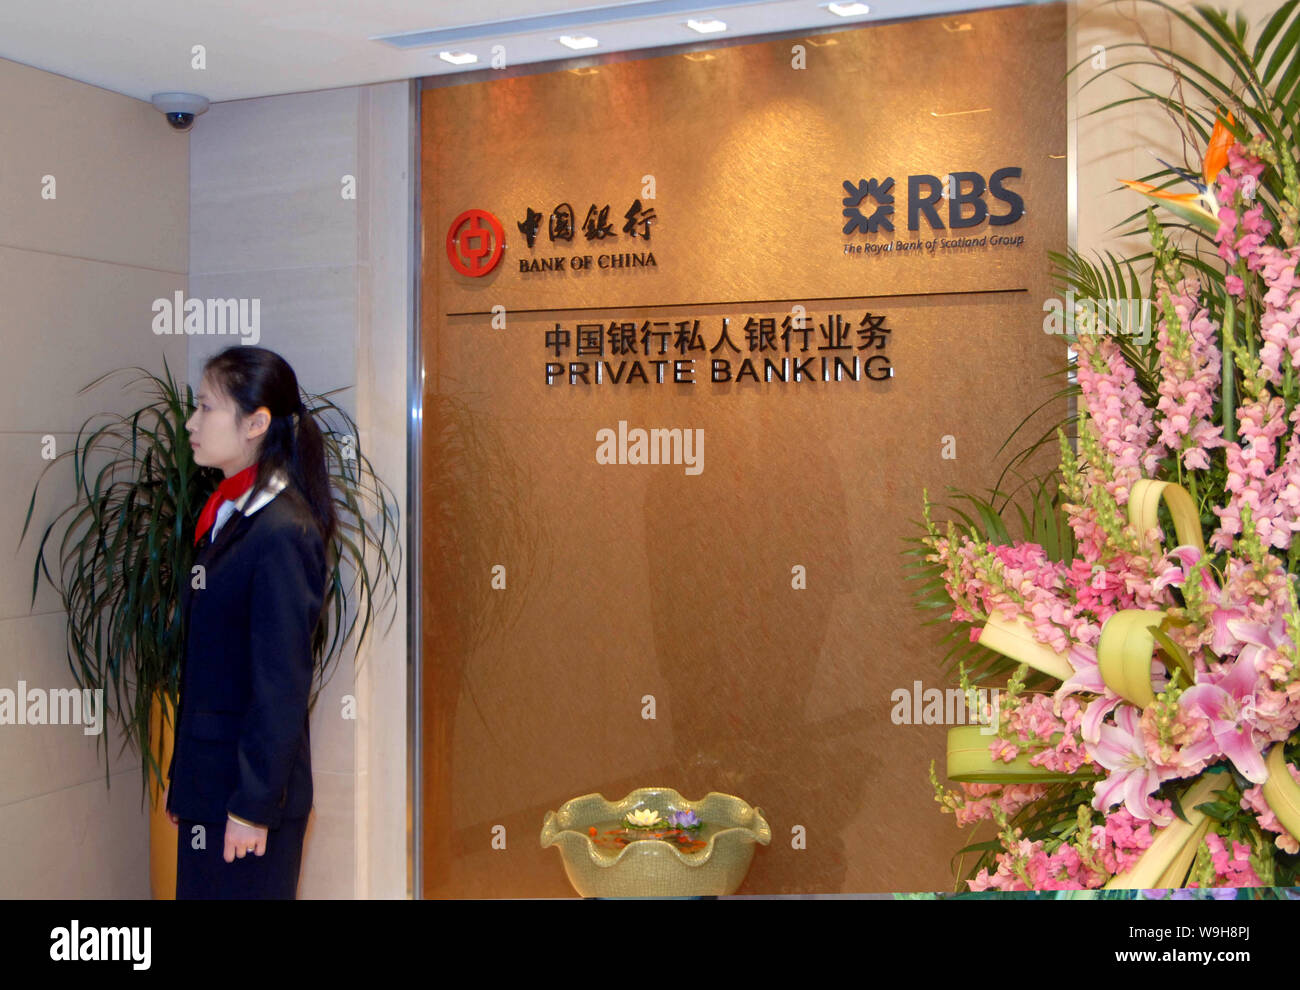 Un employé de banque chinoise se trouve près de la pancarte du Private Banking offerts par la Banque de Chine et la RBS, à la cérémonie d'ouverture de la banque privée ser Banque D'Images